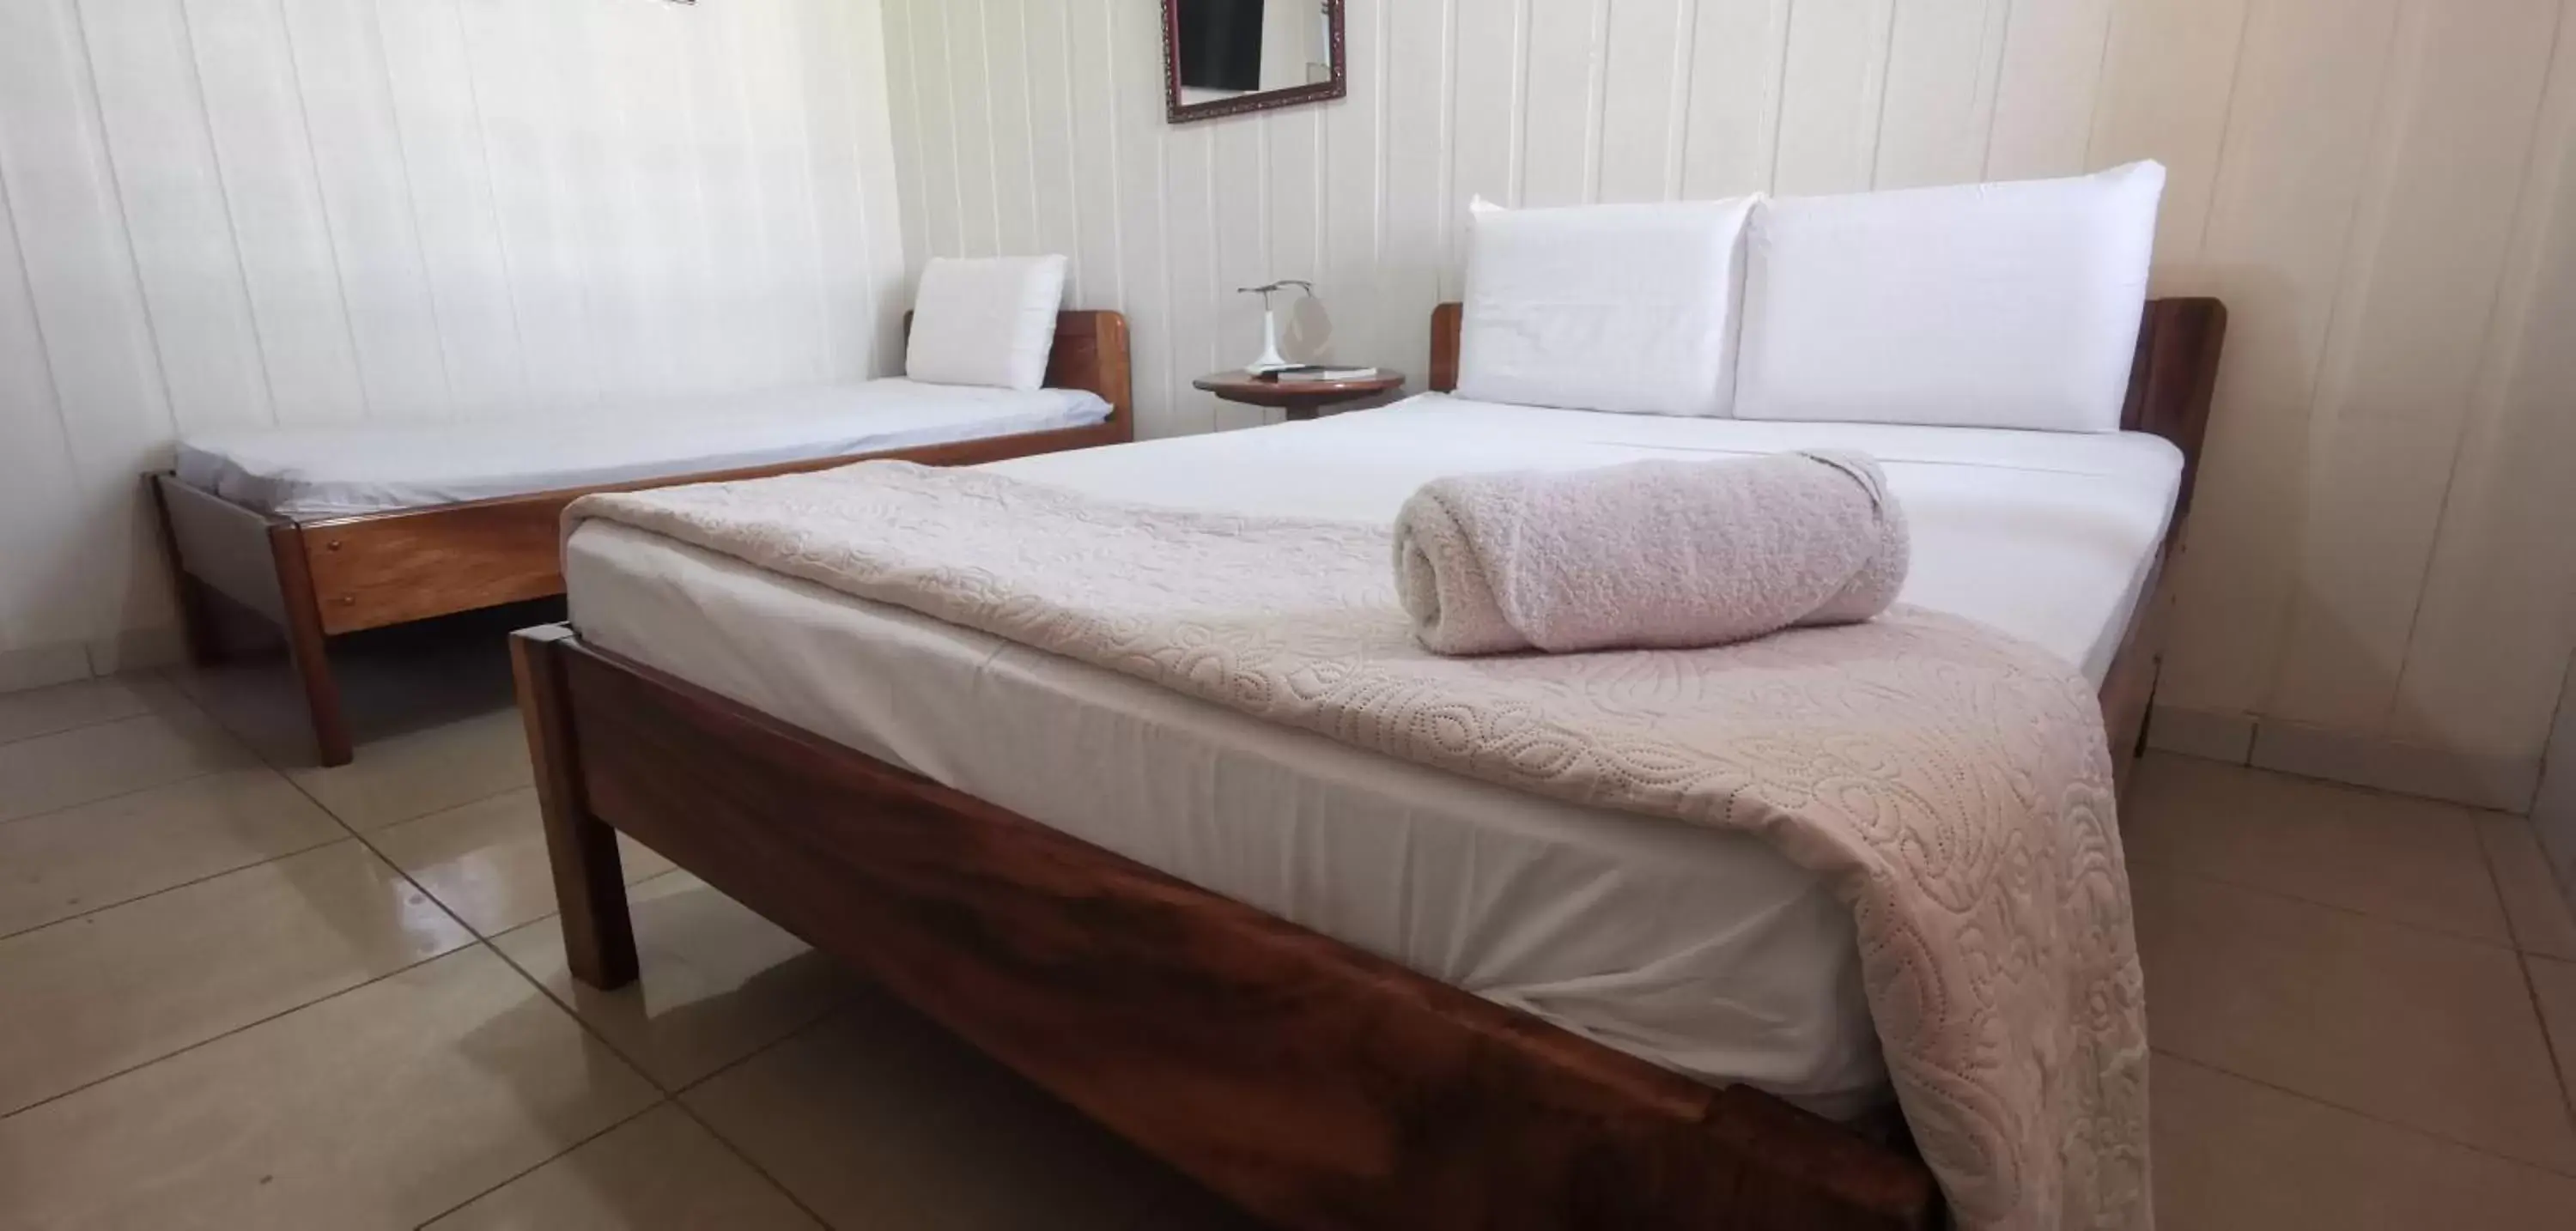 Bed in Hotel Aldea Chorotega Puntarenas